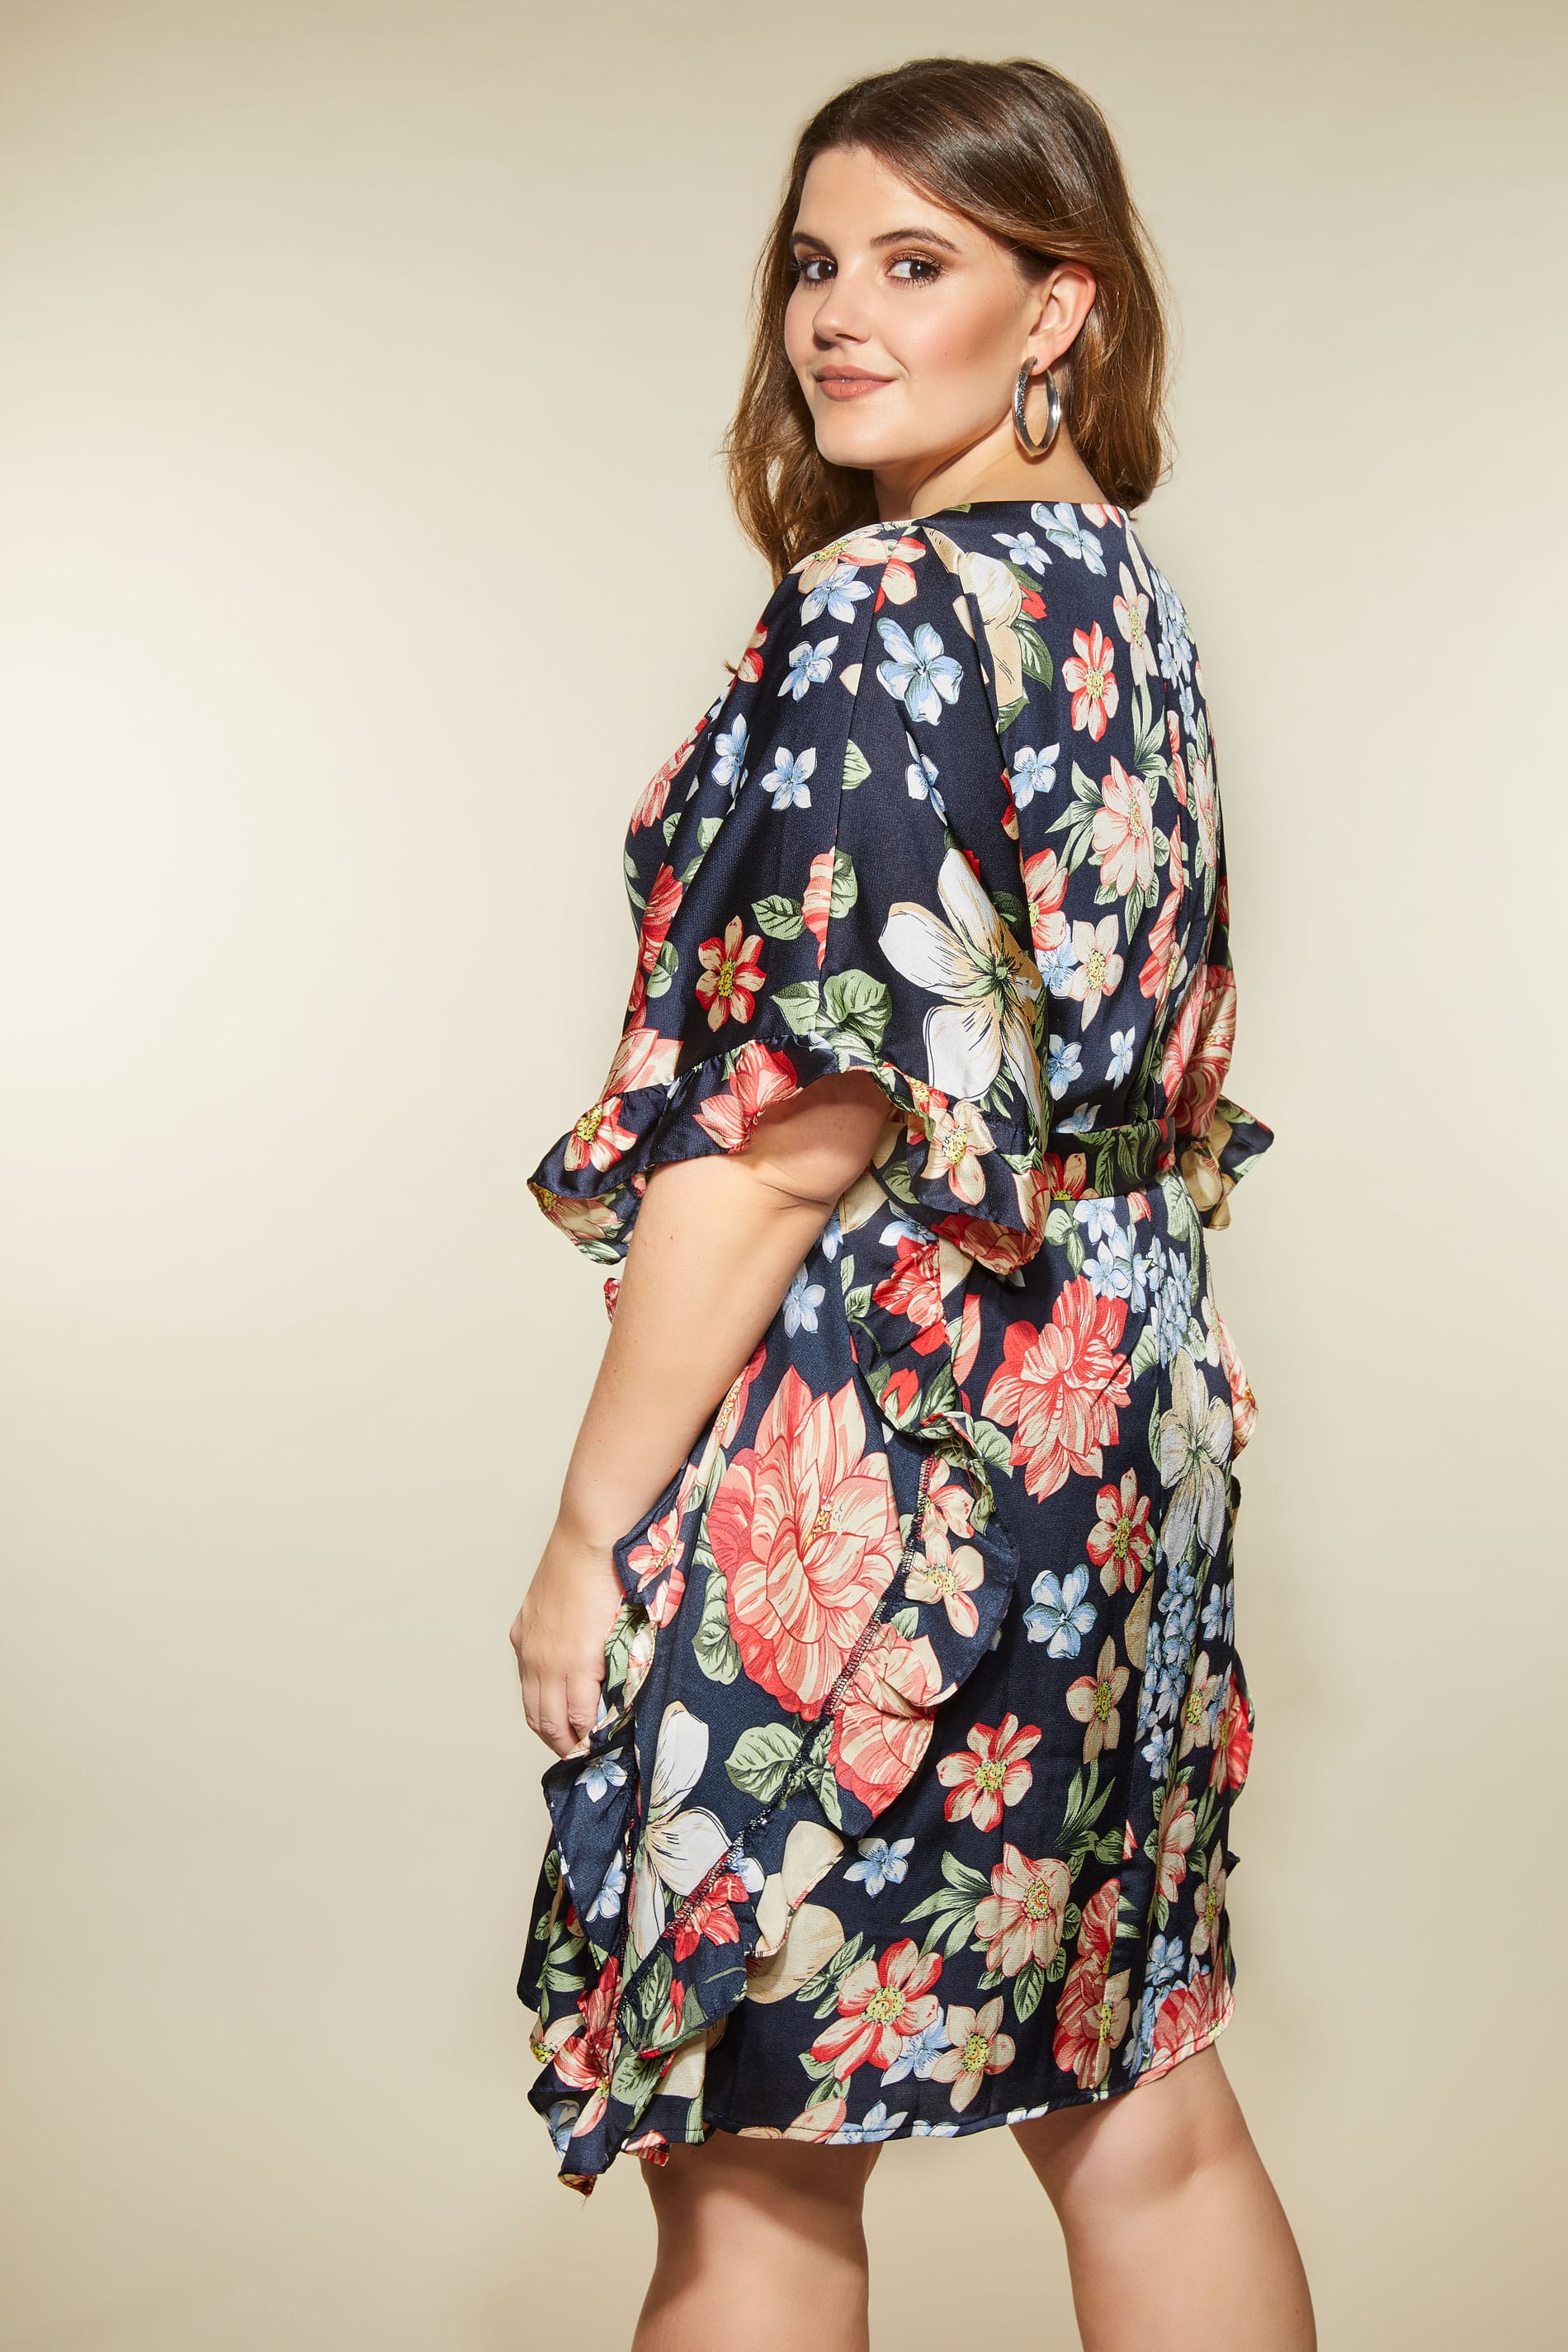 LOVEDROBE Navy Floral Kimono Dress, Plus size 16 to 32